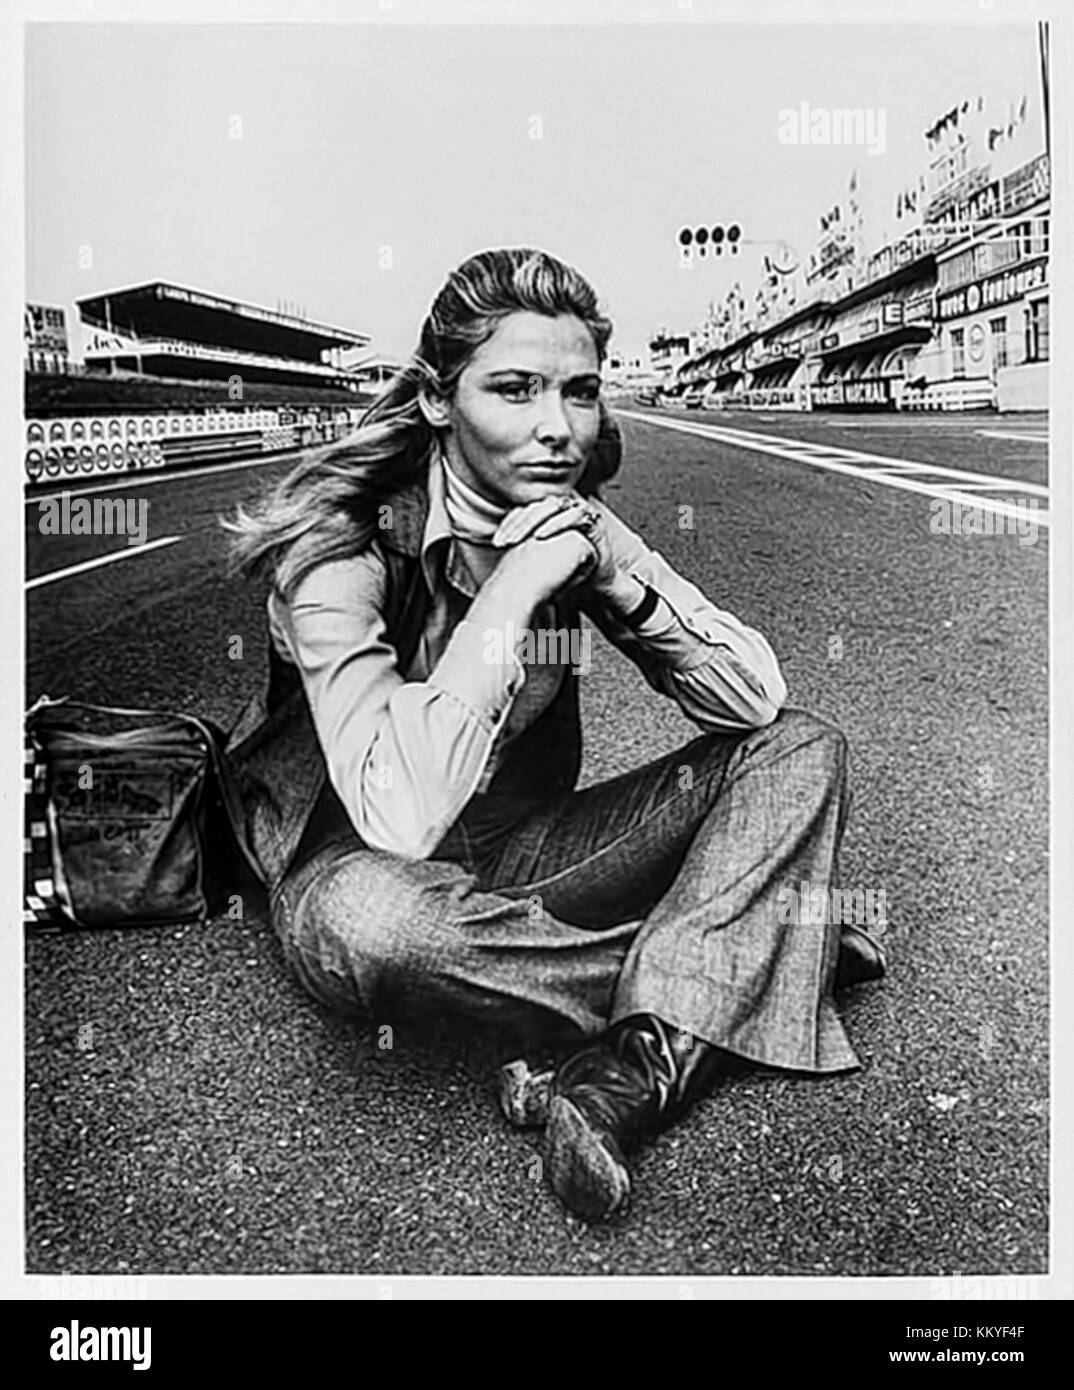 Elga Andersen come vedova Lisa Belgetti sul Circuito de la Sarthe durante le riprese di 'Le Mans' (1971) diretto da Lee H. Katzin e interpretato da Steve McQueen. Foto Stock